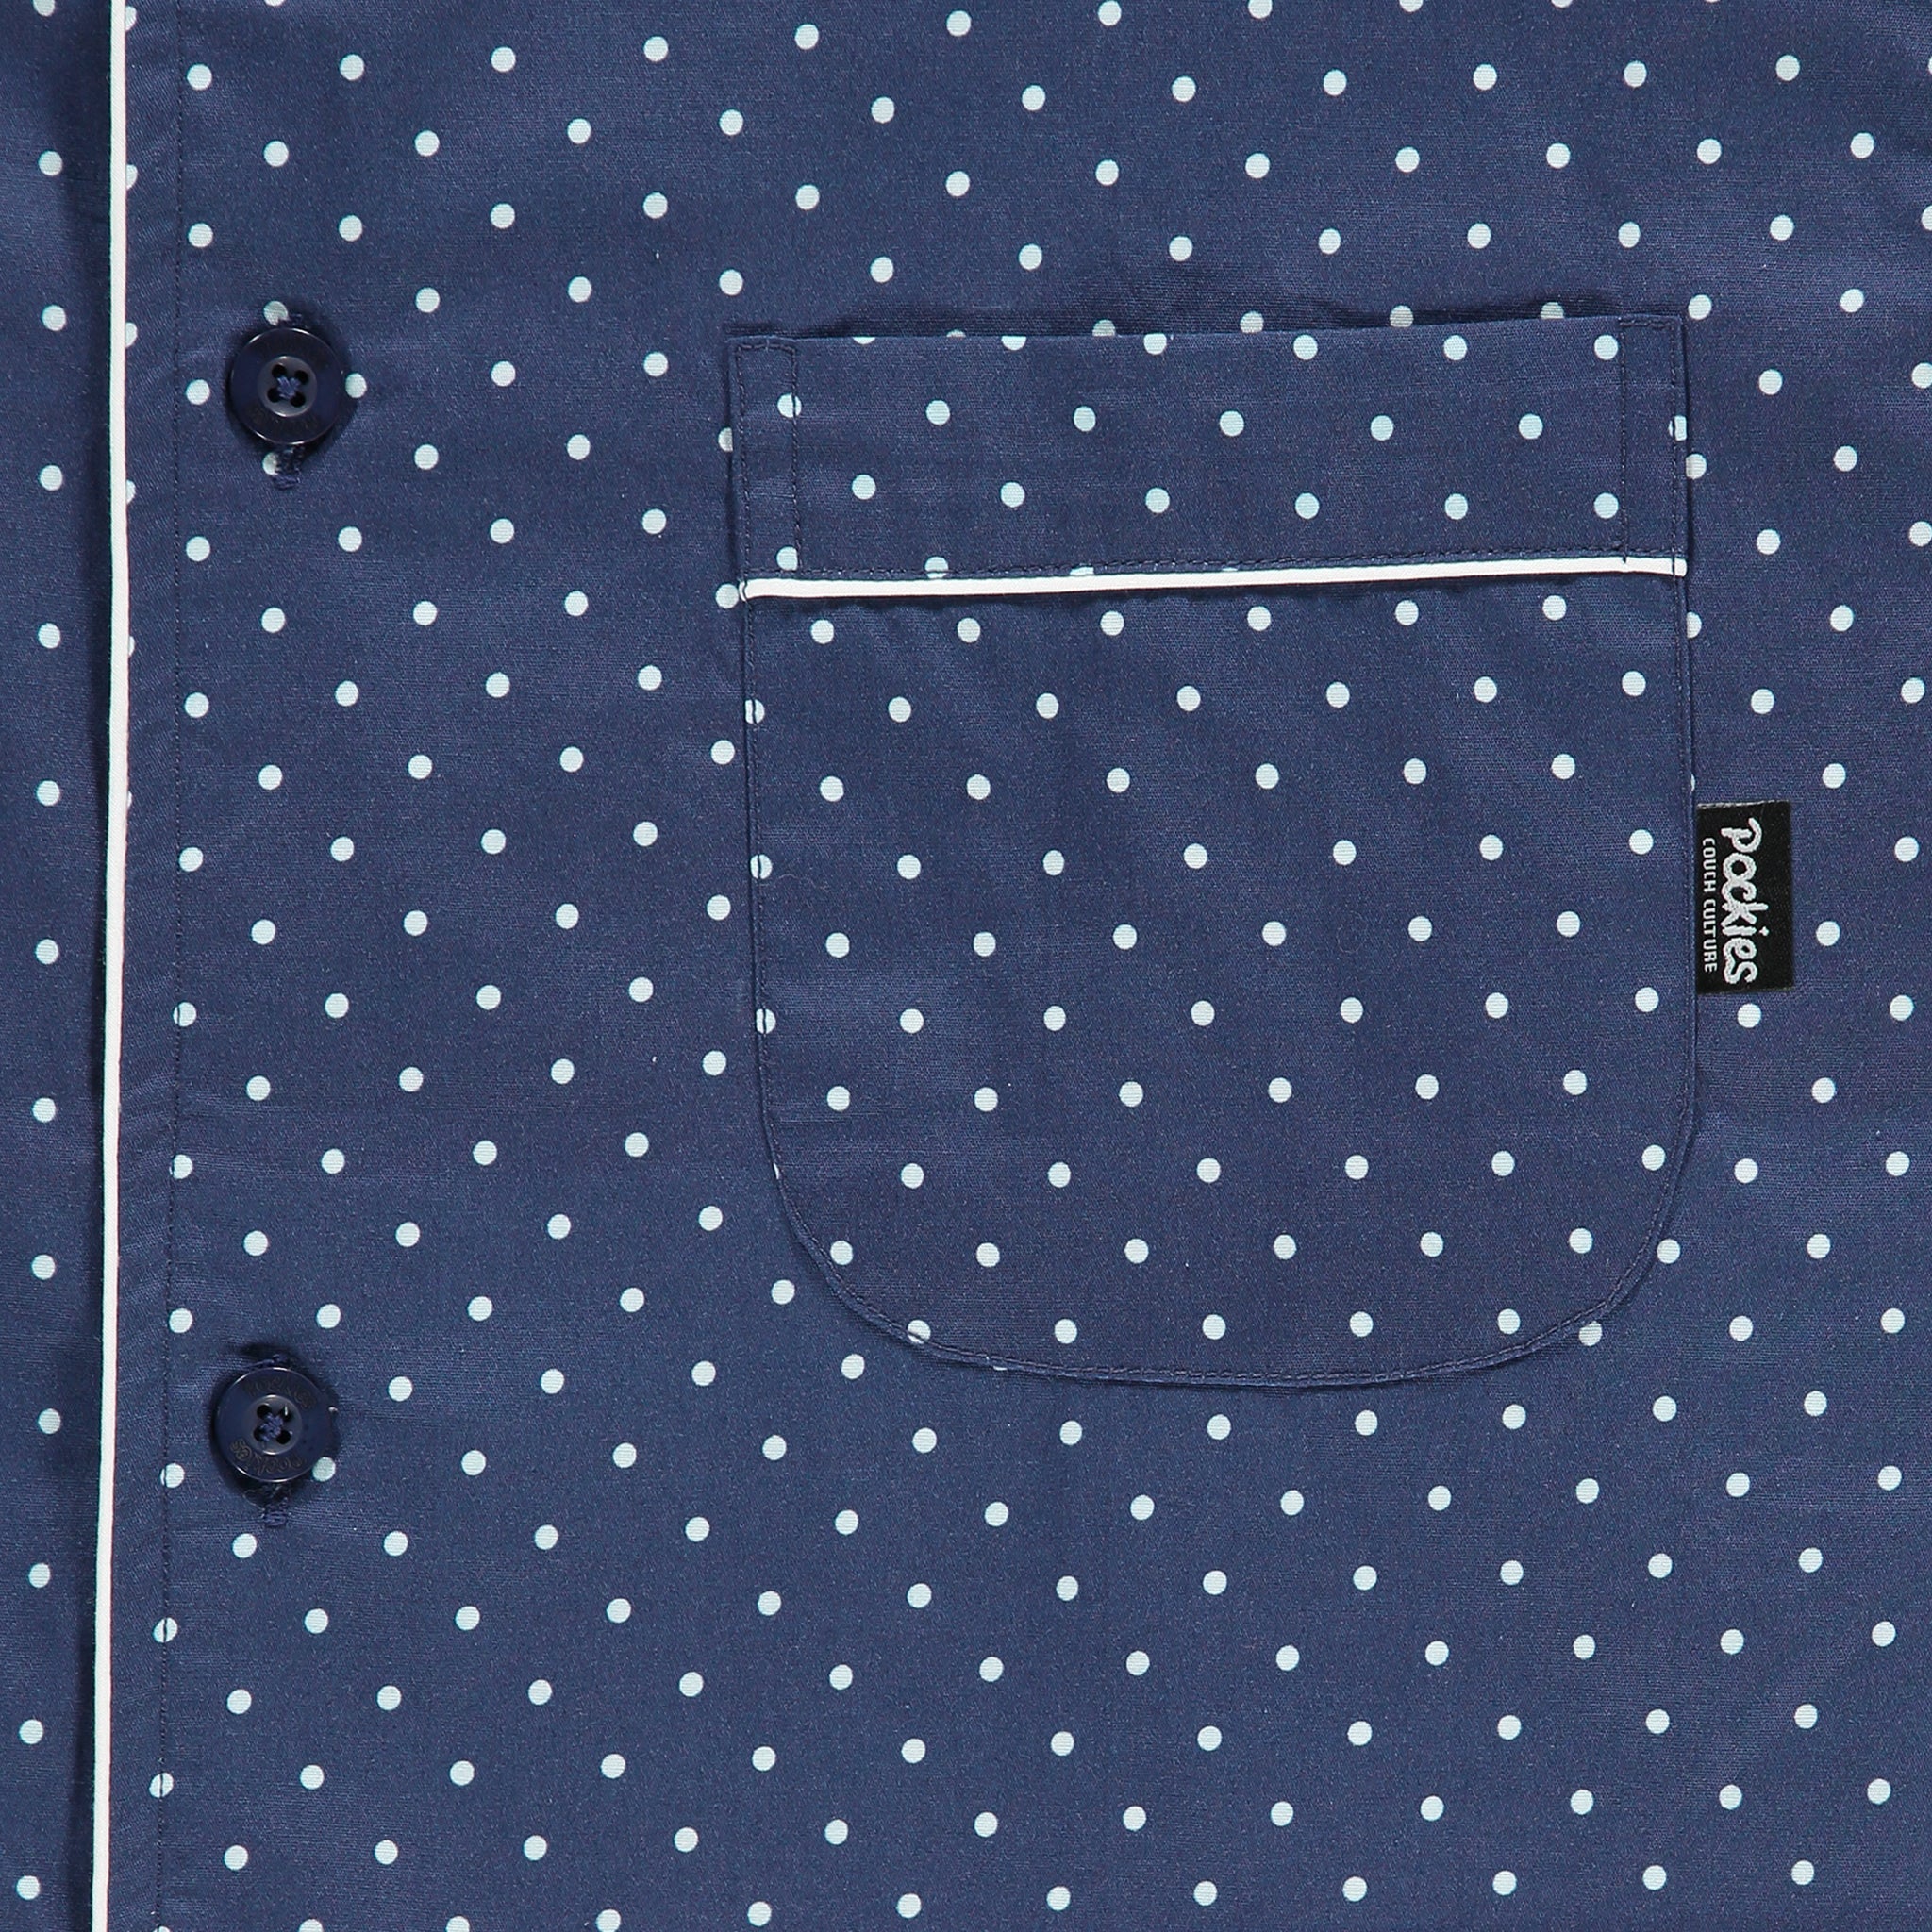 Navy Dots Pyjama Shirt